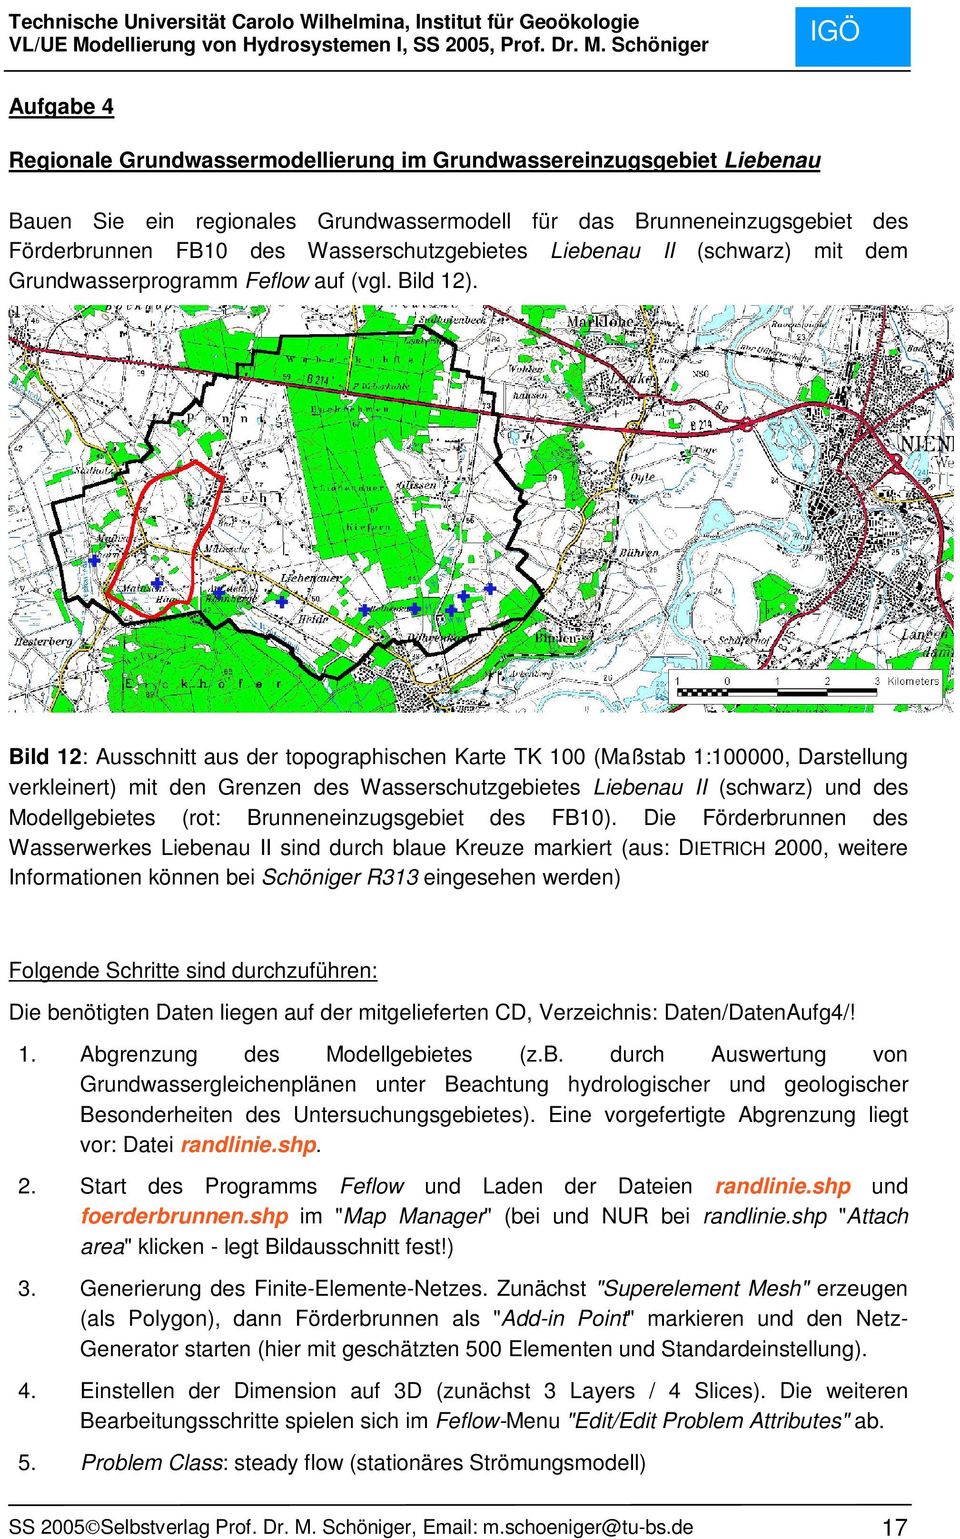 Bild 12: Ausschnitt aus der topographischen Karte TK 100 (Maßstab 1:100000, Darstellung verkleinert) mit den Grenzen des Wasserschutzgebietes Liebenau II (schwarz) und des Modellgebietes (rot: